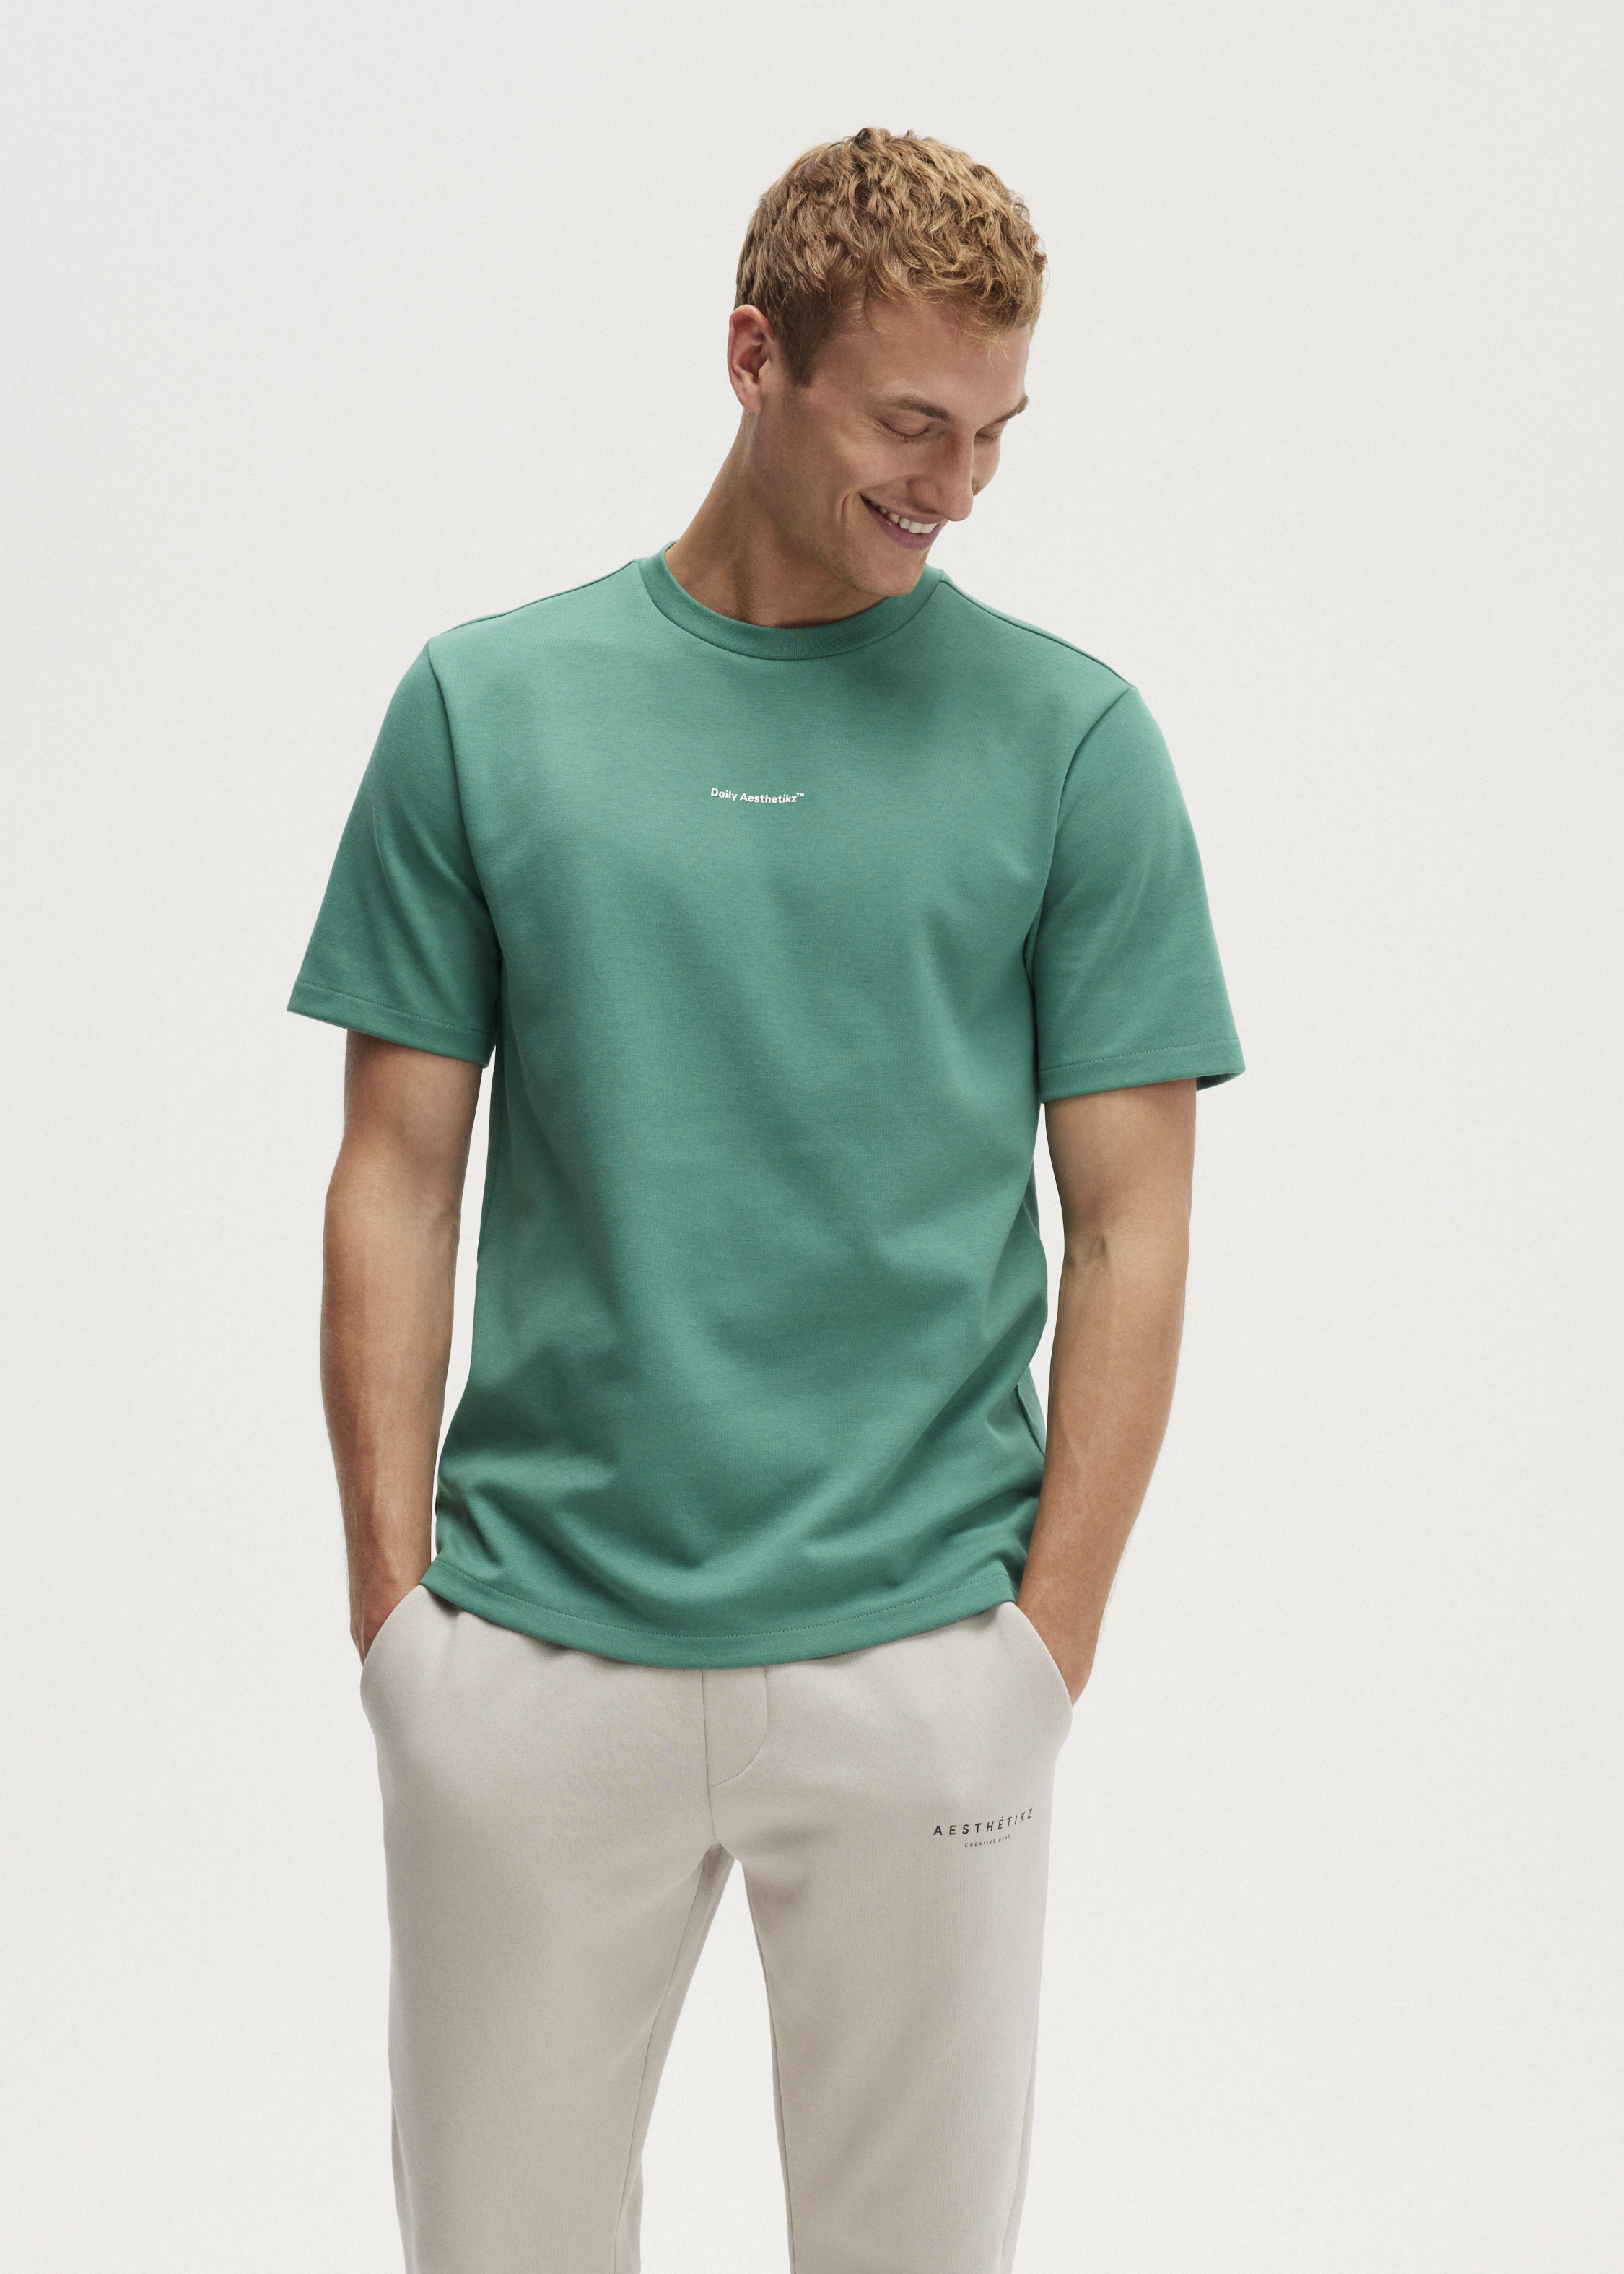 Rationalisatie Verrijking Fabel Daily Trademark T-shirt groen (GR.COL) | The Sting